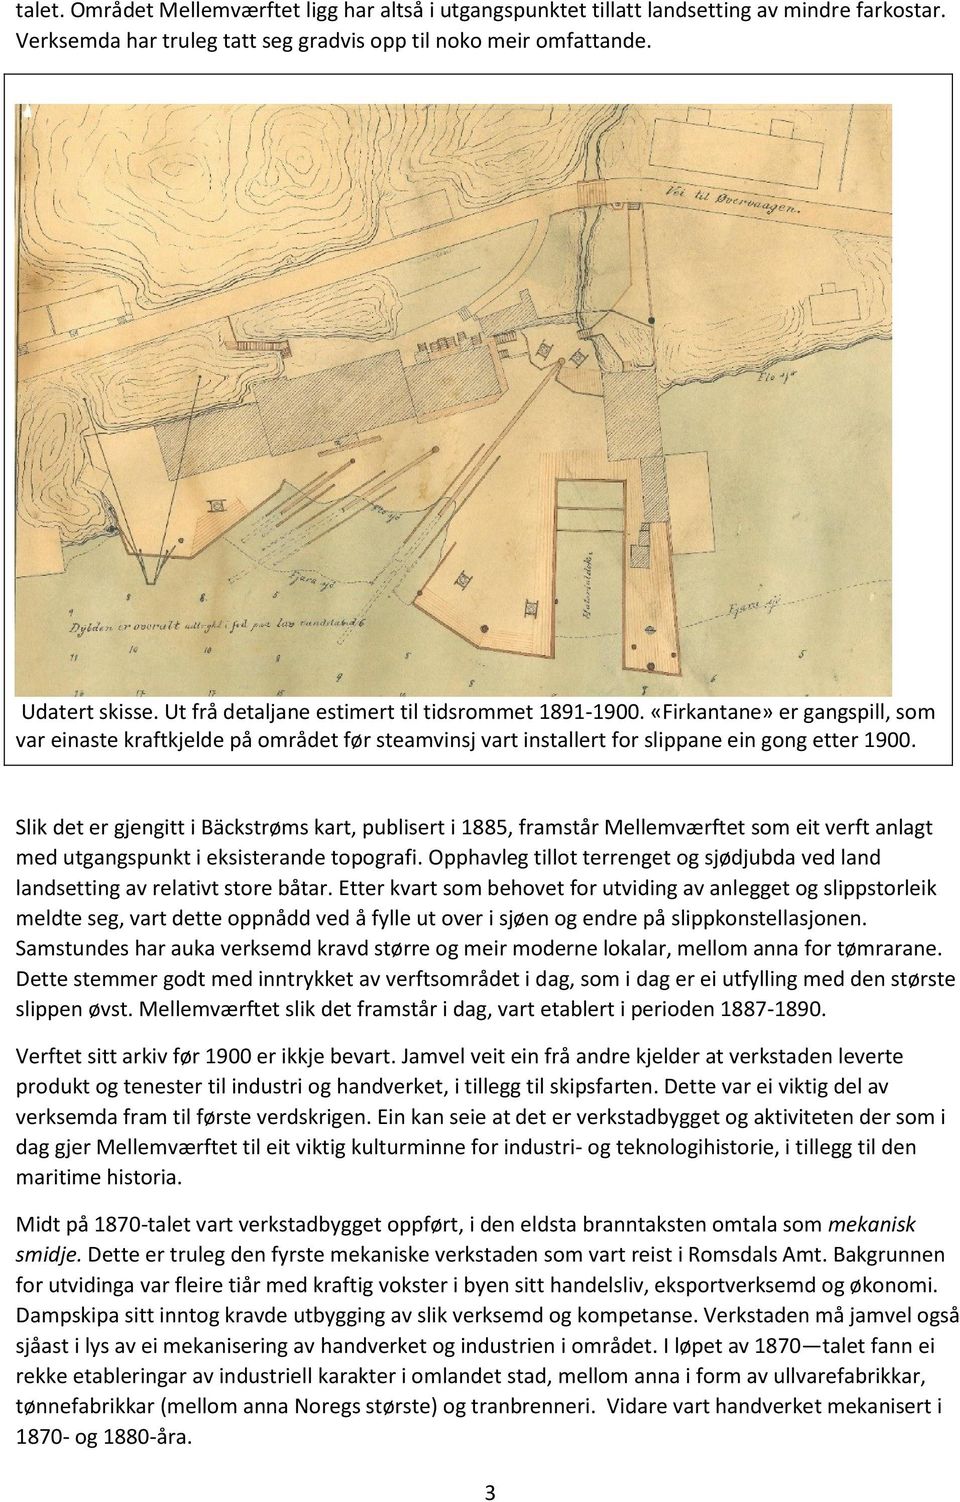 Slik det er gjengitt i Bäckstrøms kart, publisert i 1885, framstår Mellemværftet som eit verft anlagt med utgangspunkt i eksisterande topografi.